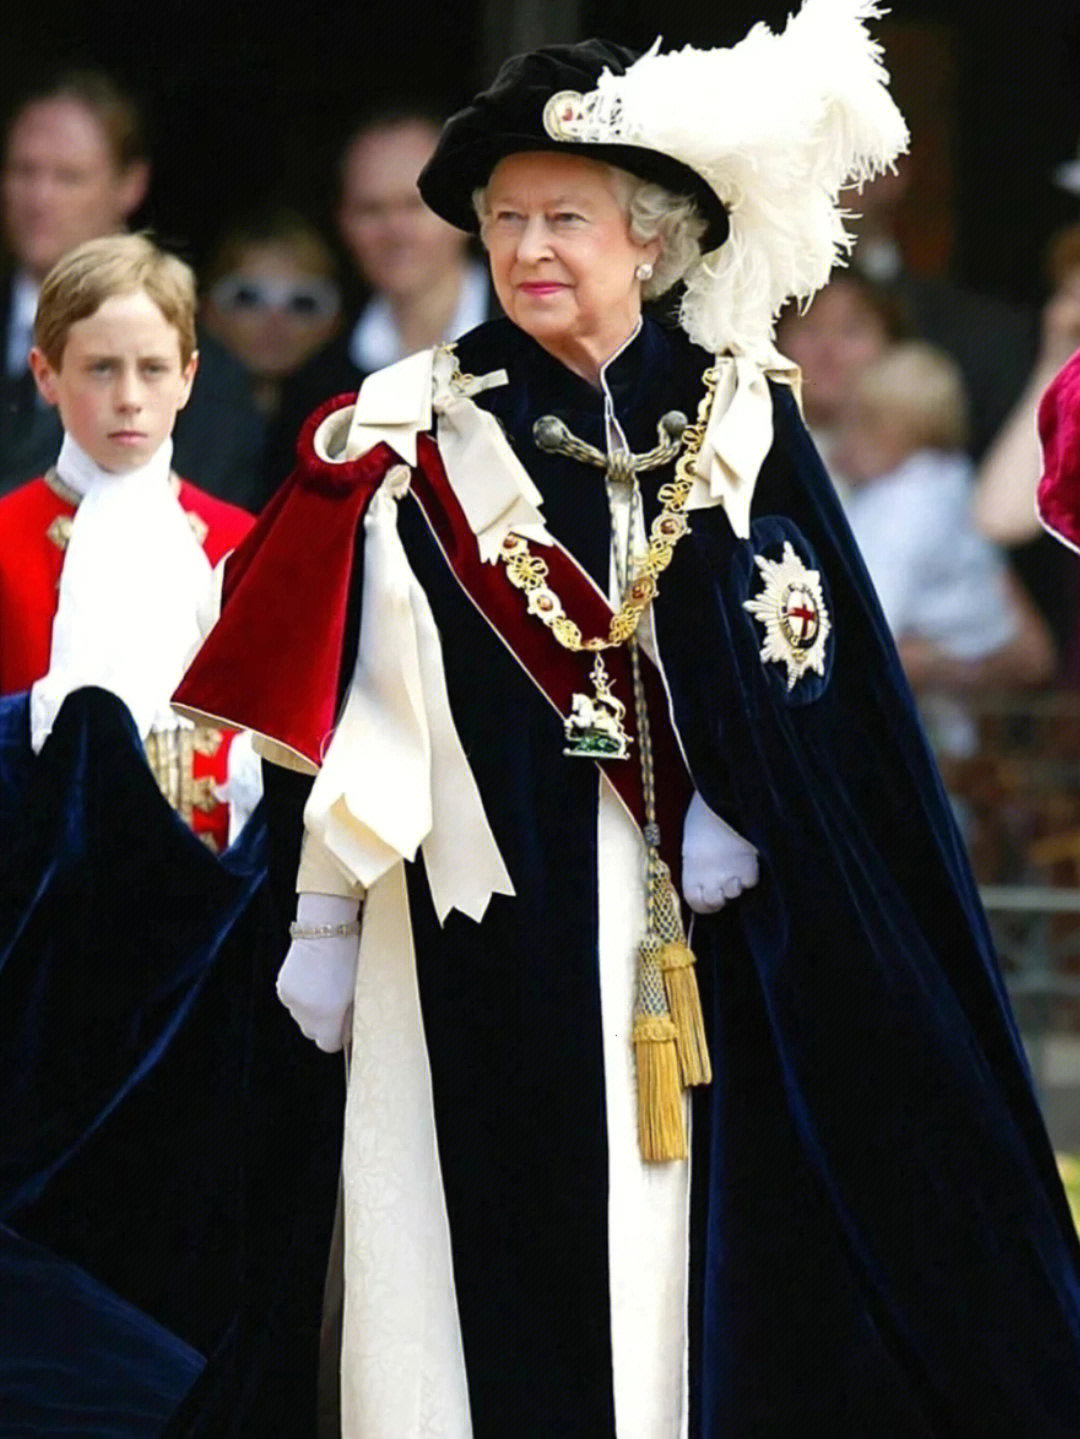 佩戴英国嘉德勋章的女王和王室成员